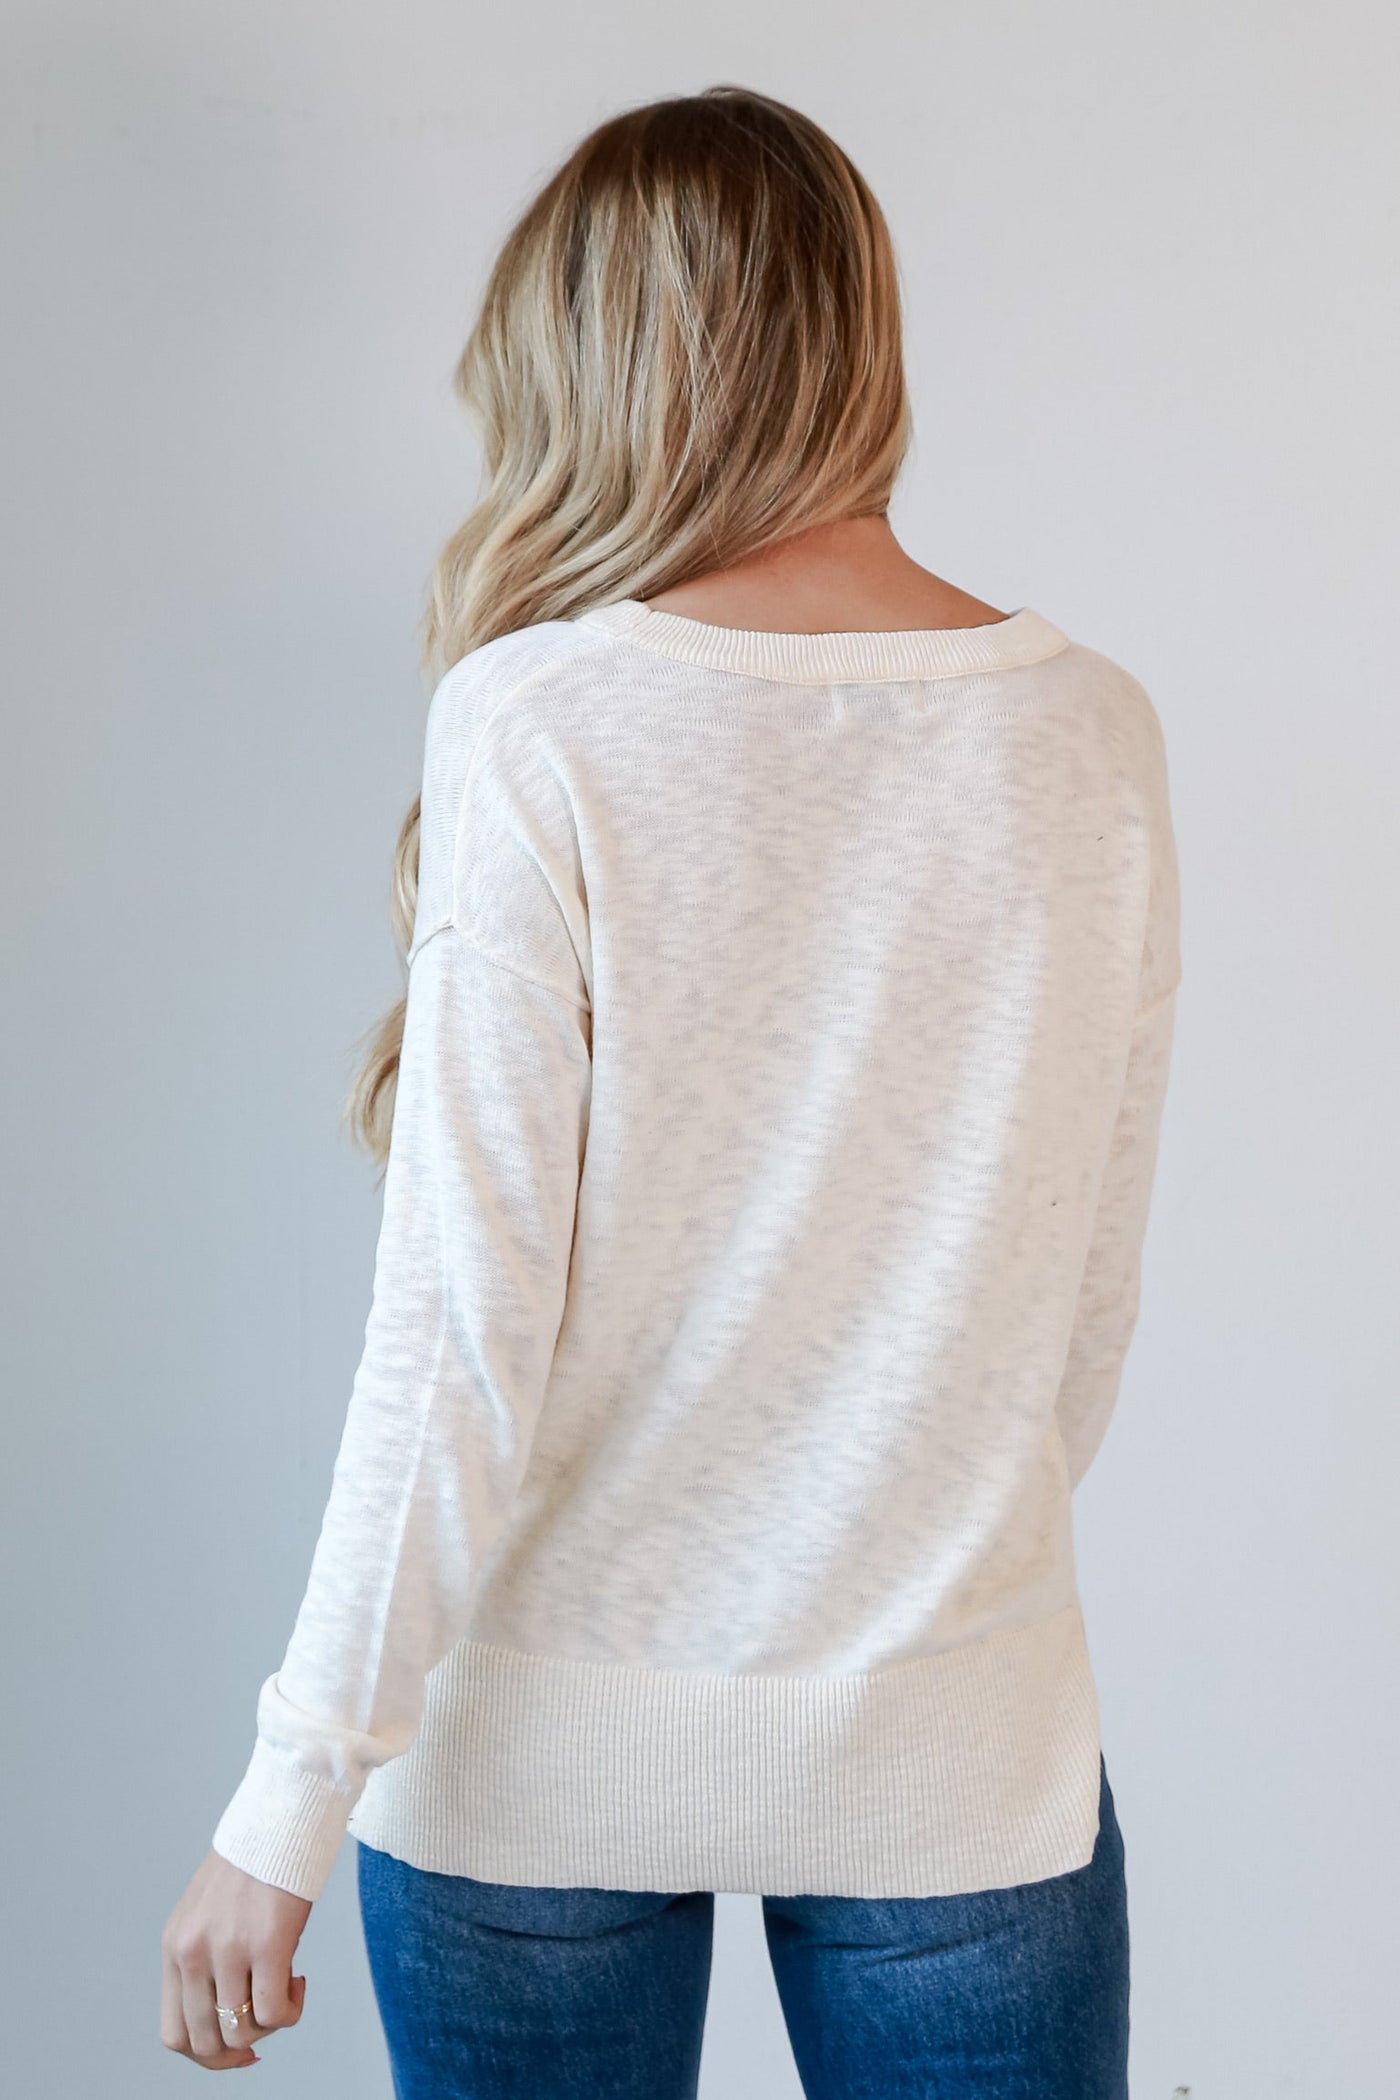 white knit top